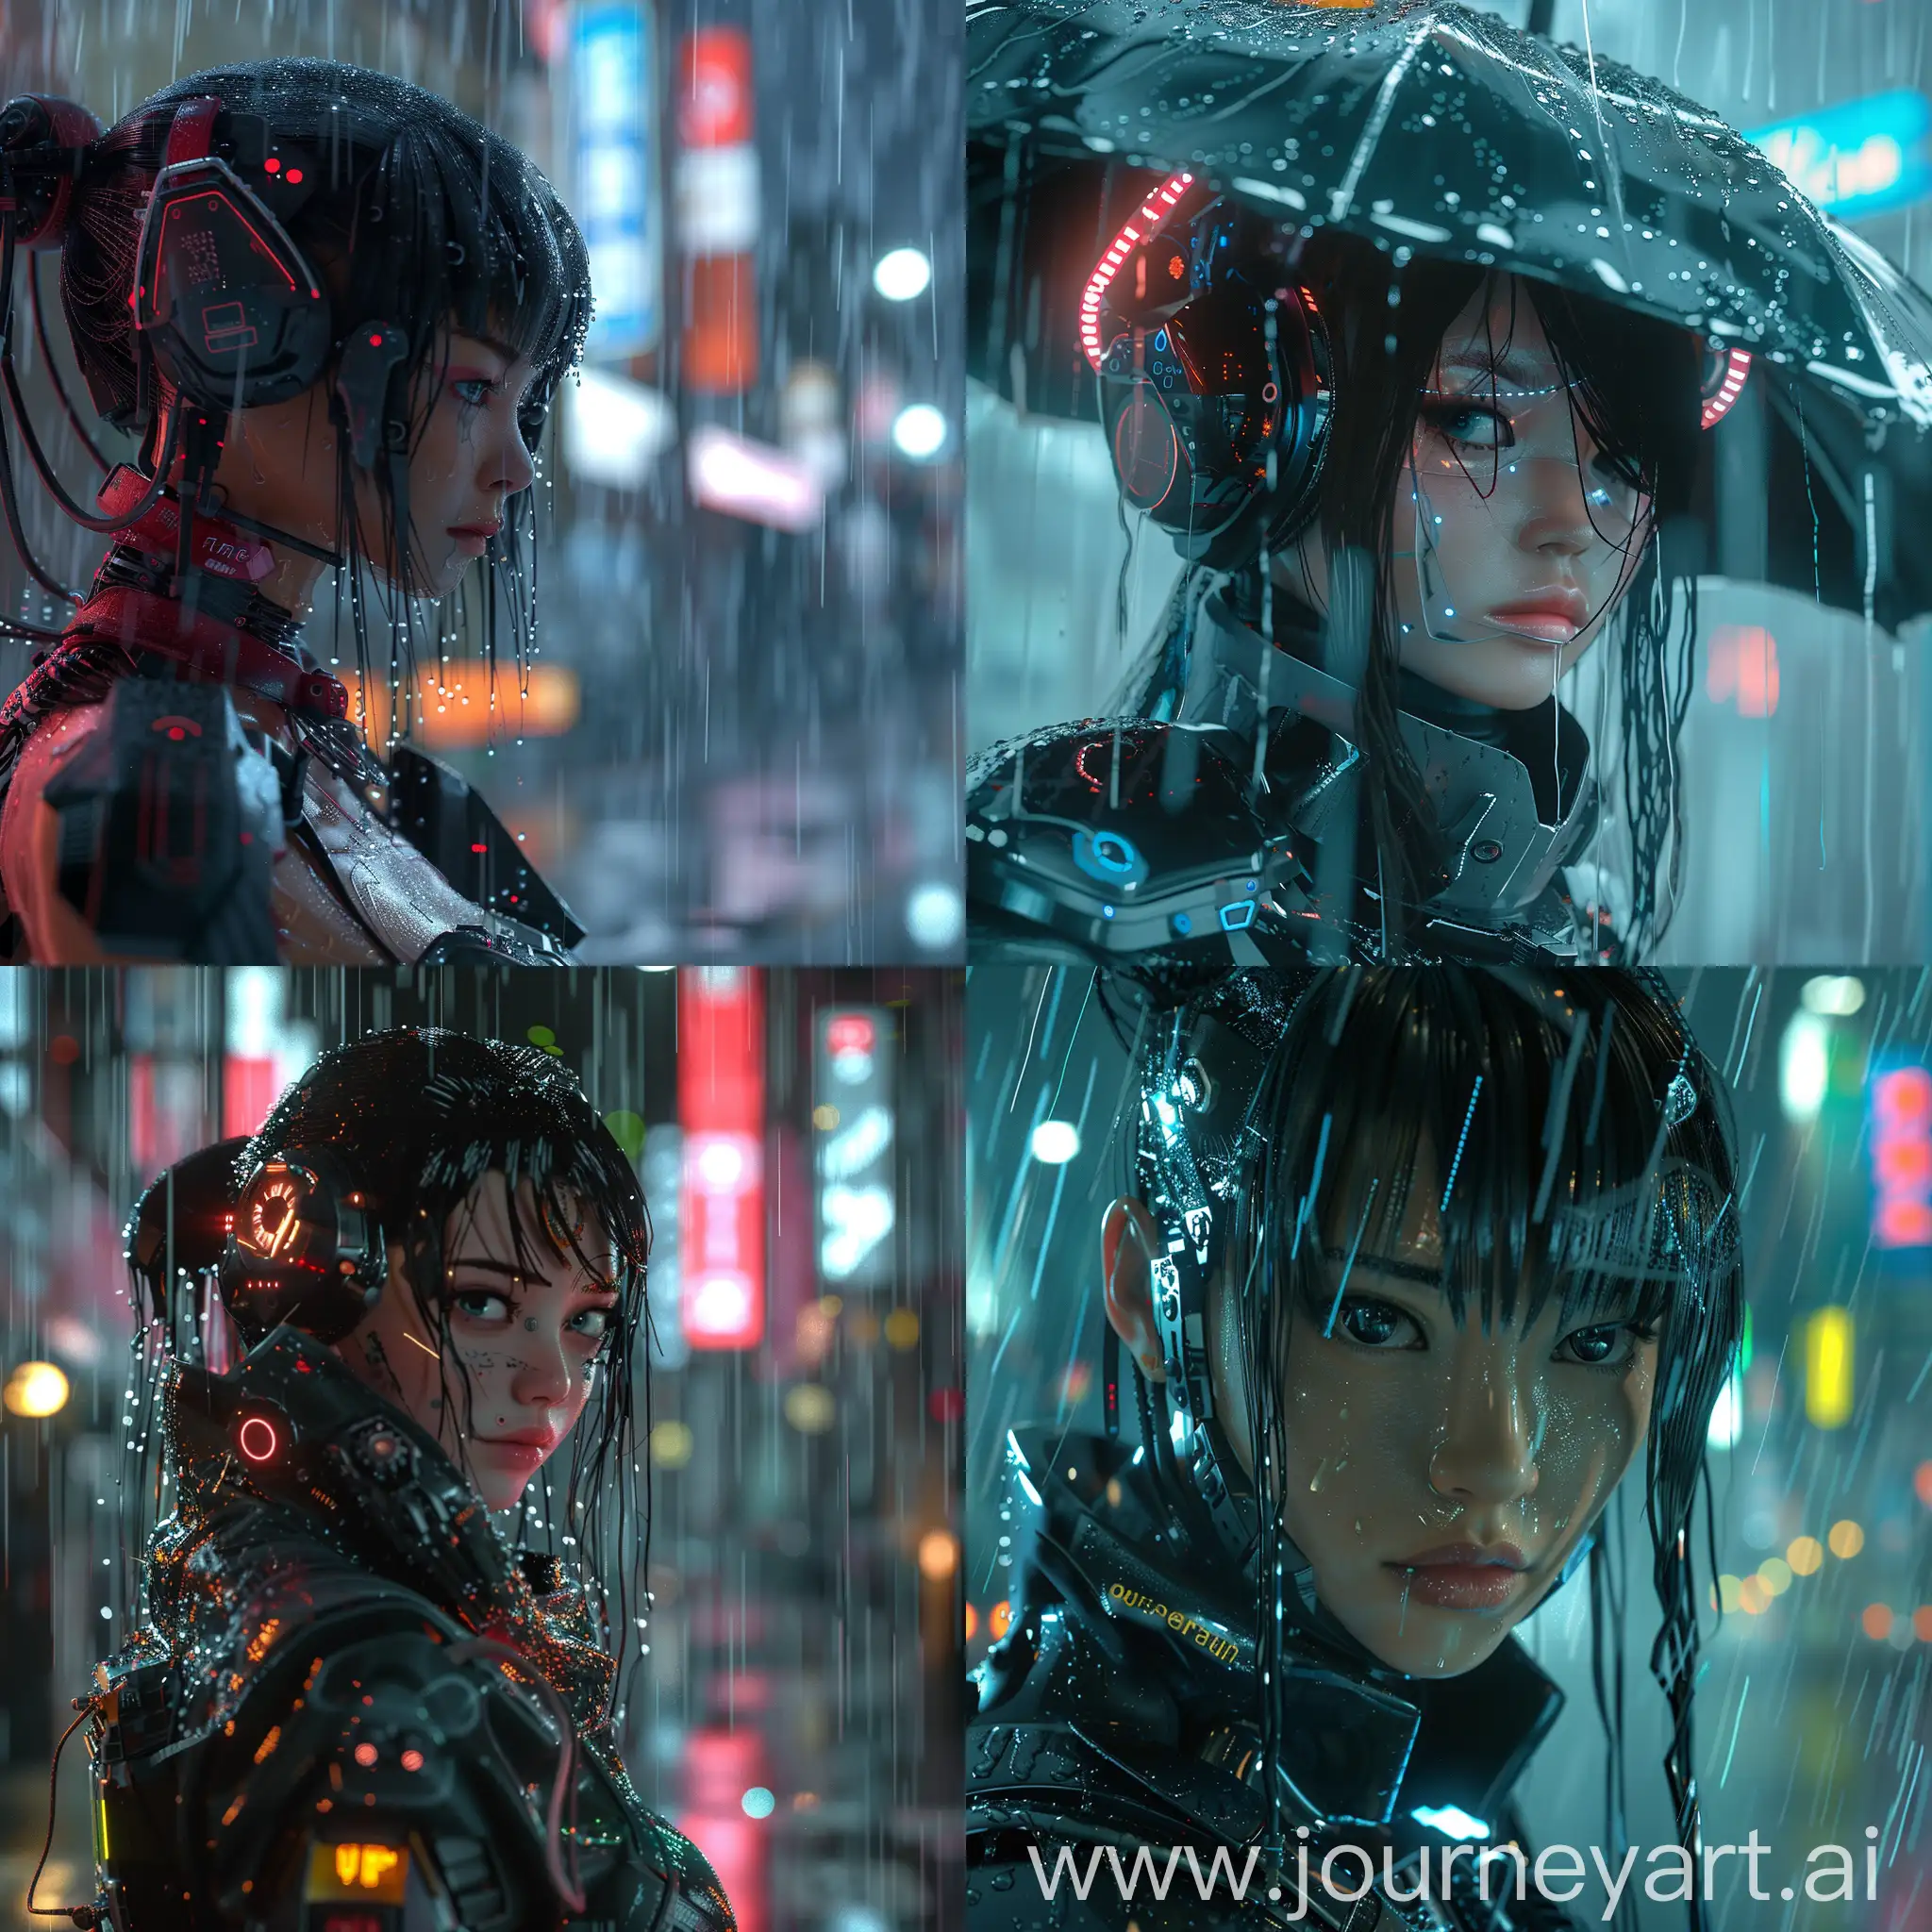 Futuristic-Japan-Girl-Walking-in-Cybernetic-Rain